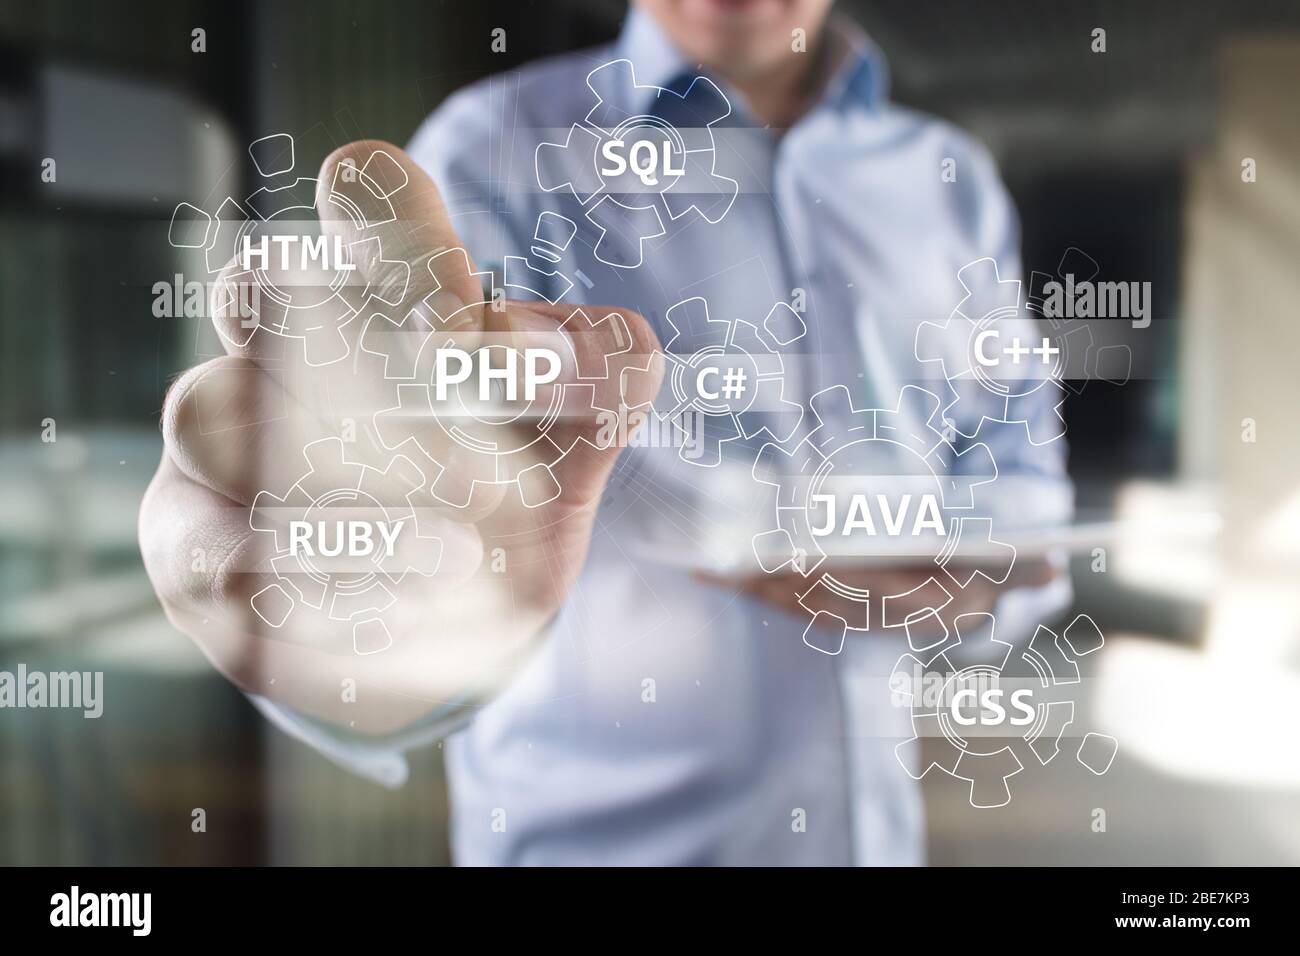 Concept d'outils de développement Web sur écran virtuel. Langage de programmation et scripts. PHP, SQL, HTML, Java et autres Banque D'Images